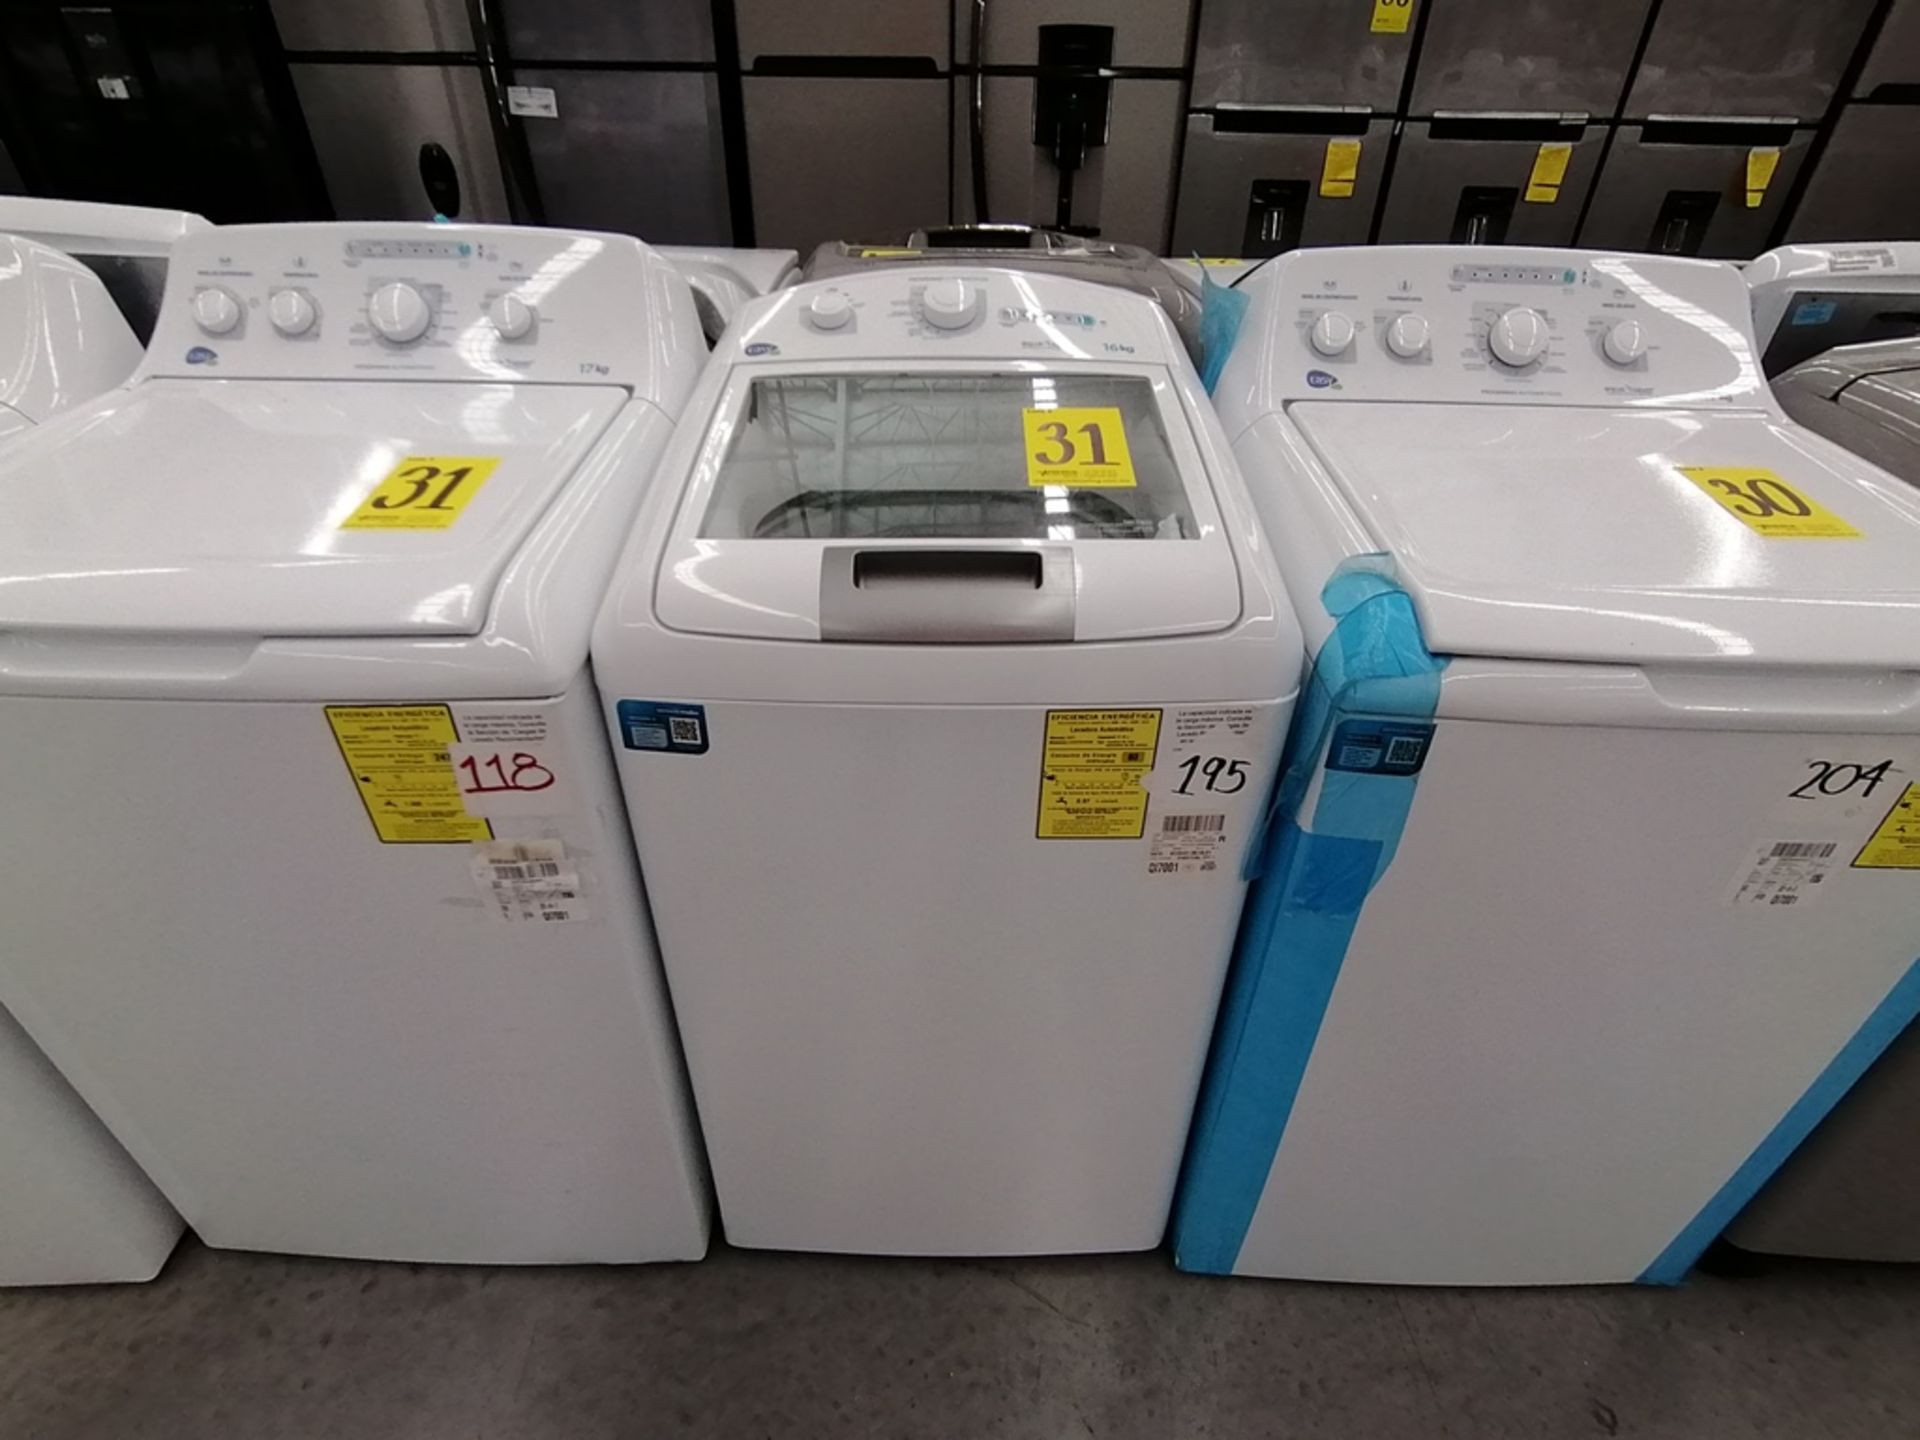 Lote de 3 lavadoras contiene: 1 Lavadora de 17KG, Marca Easy, Modelo LEA77114CBAB03, Serie 2105S522 - Image 3 of 30